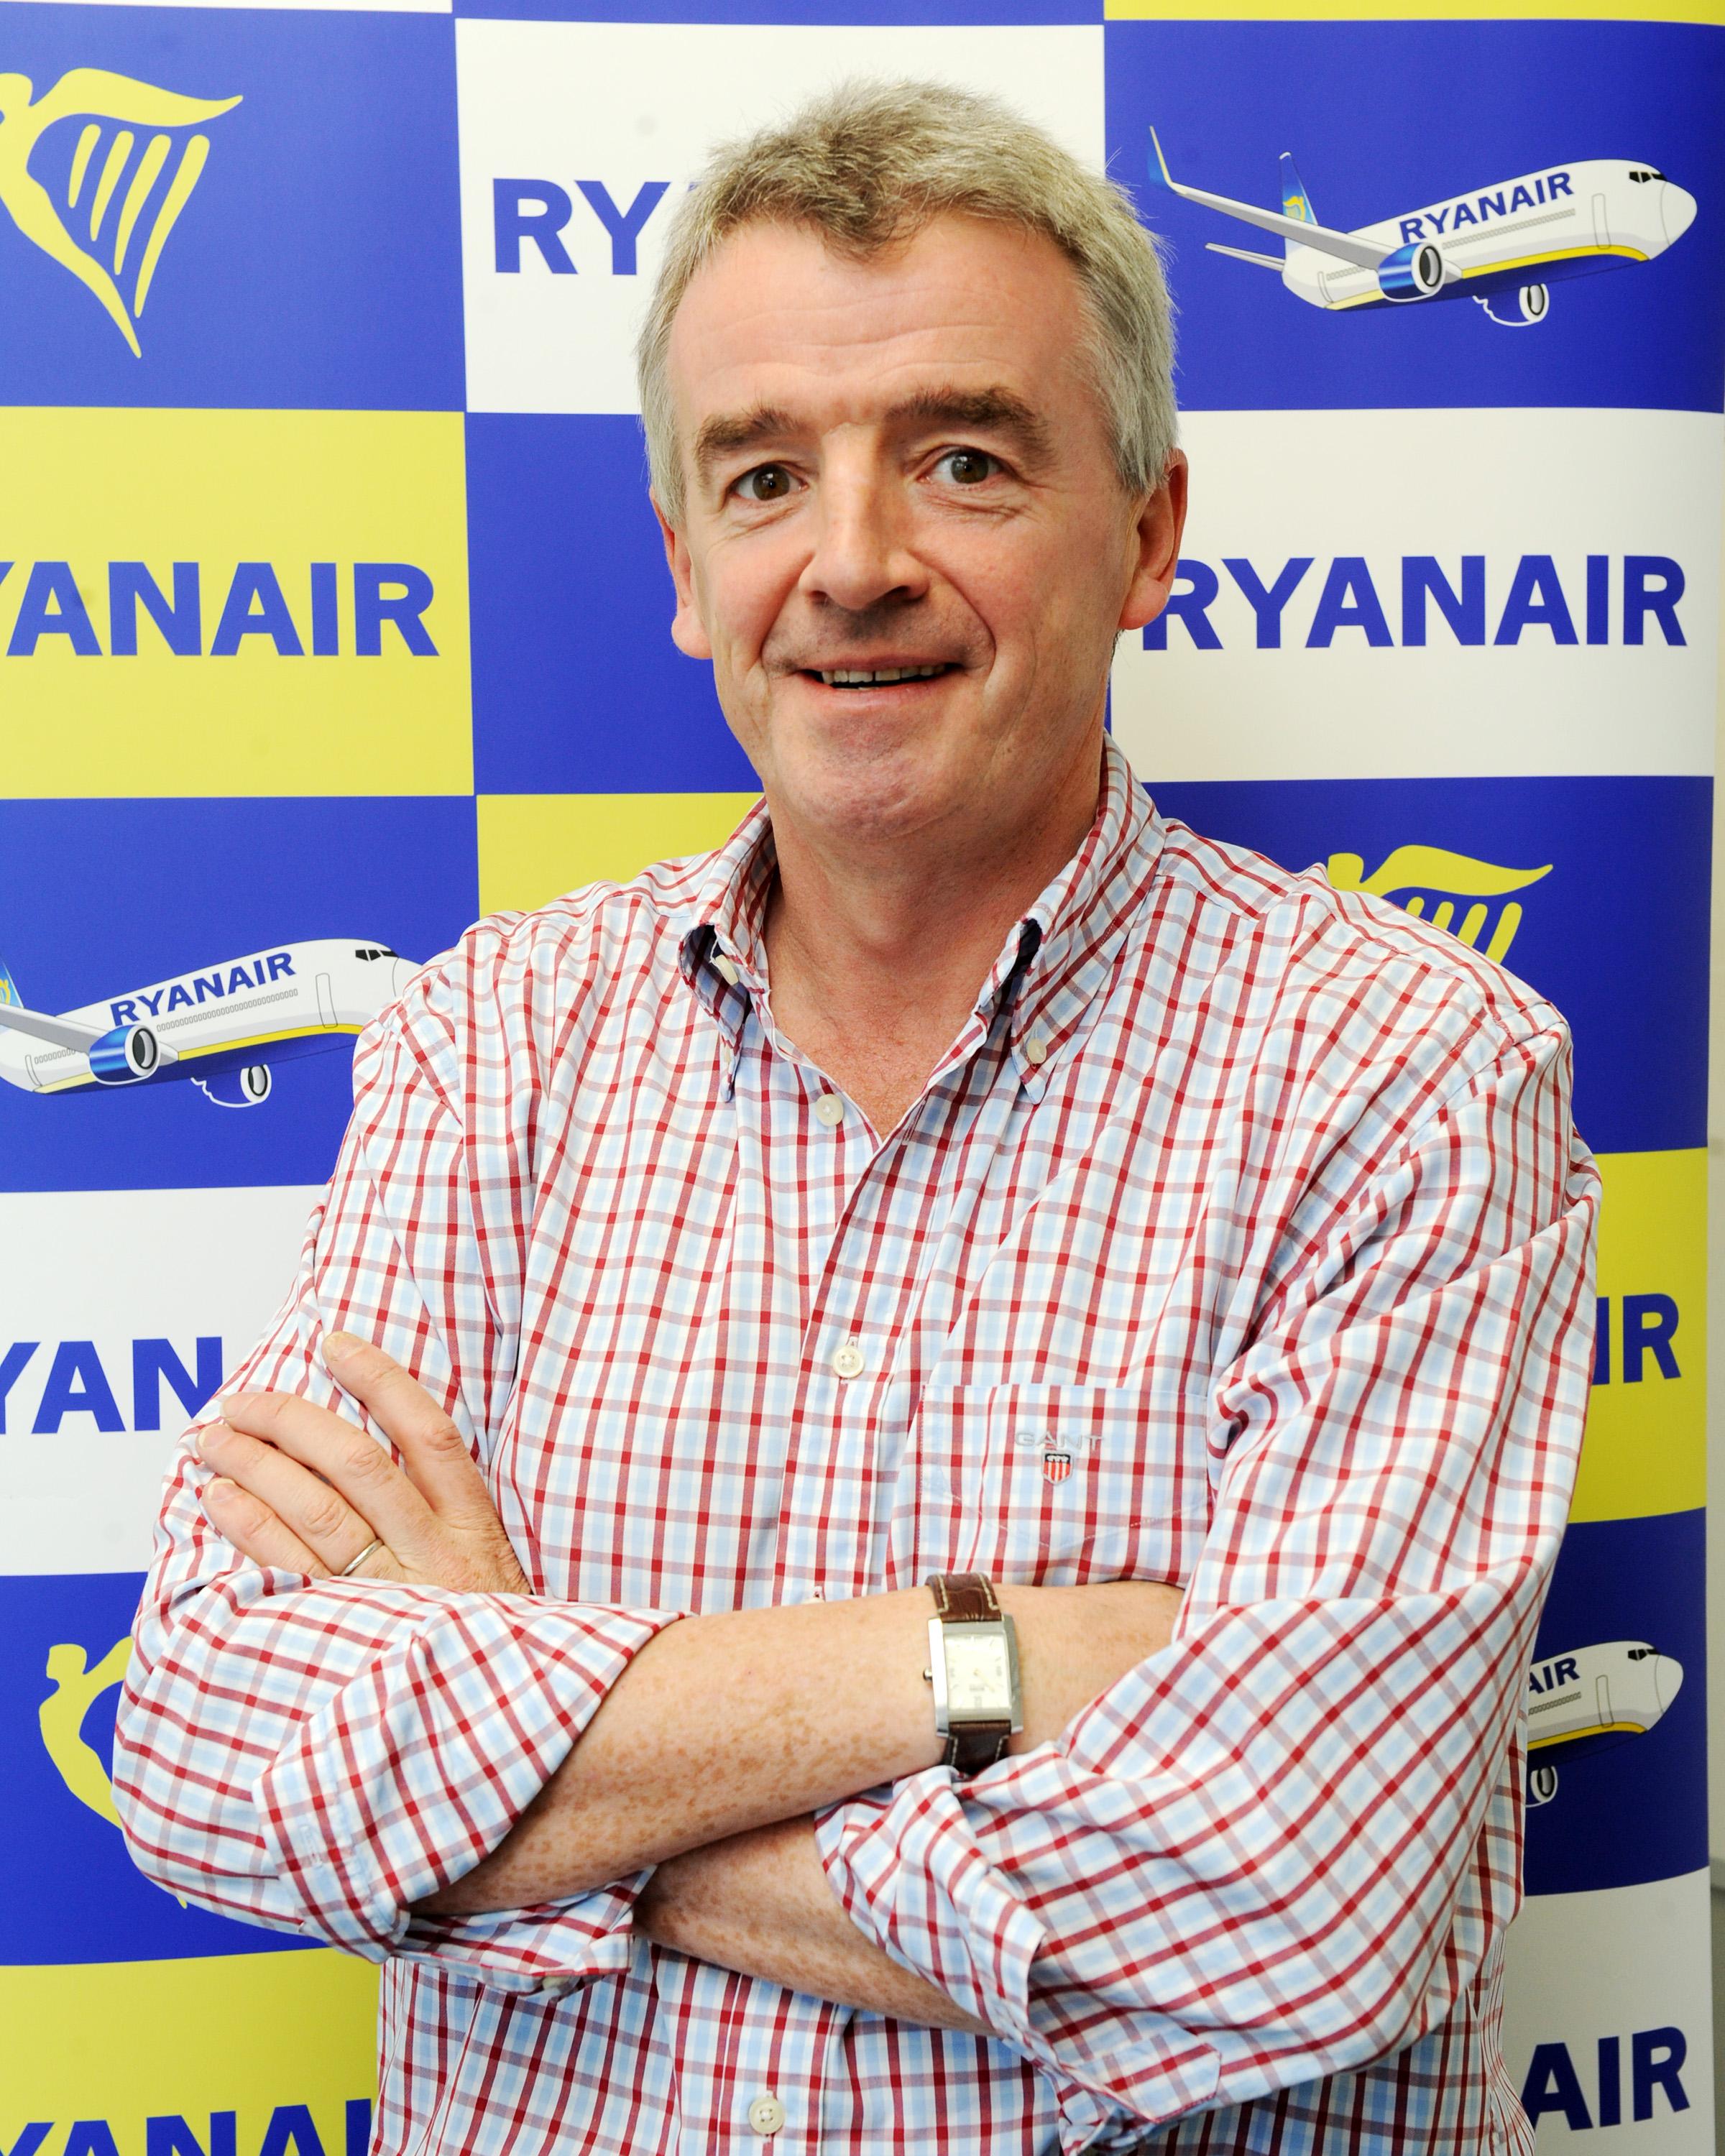 Pourquoi Ryanair réussit-elle si bien?